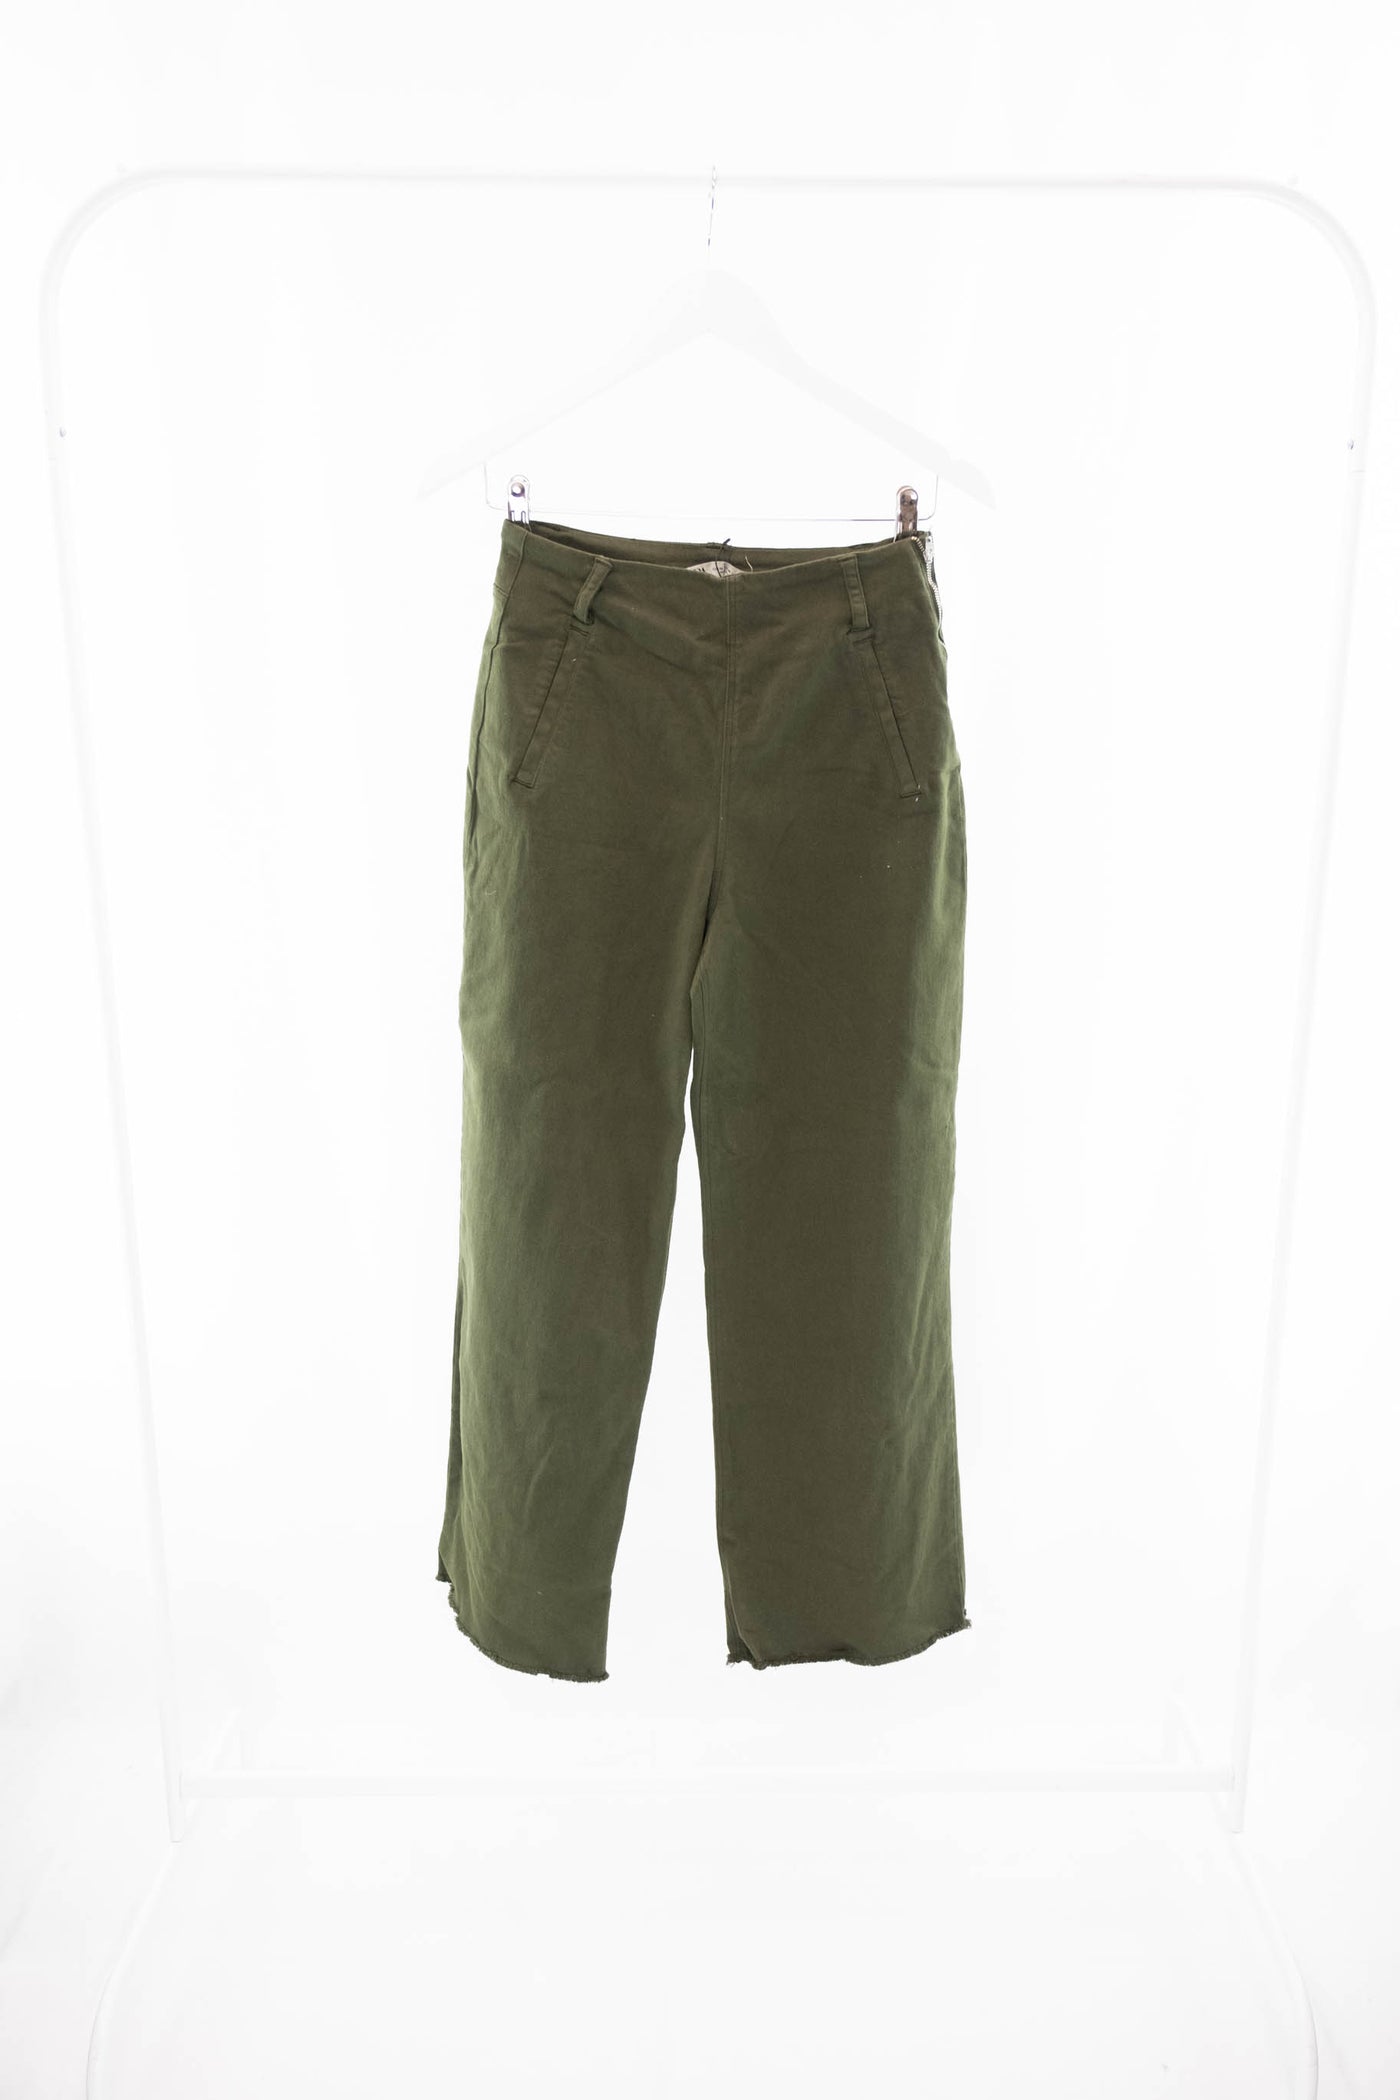 Pantalón verde (NUEVO)